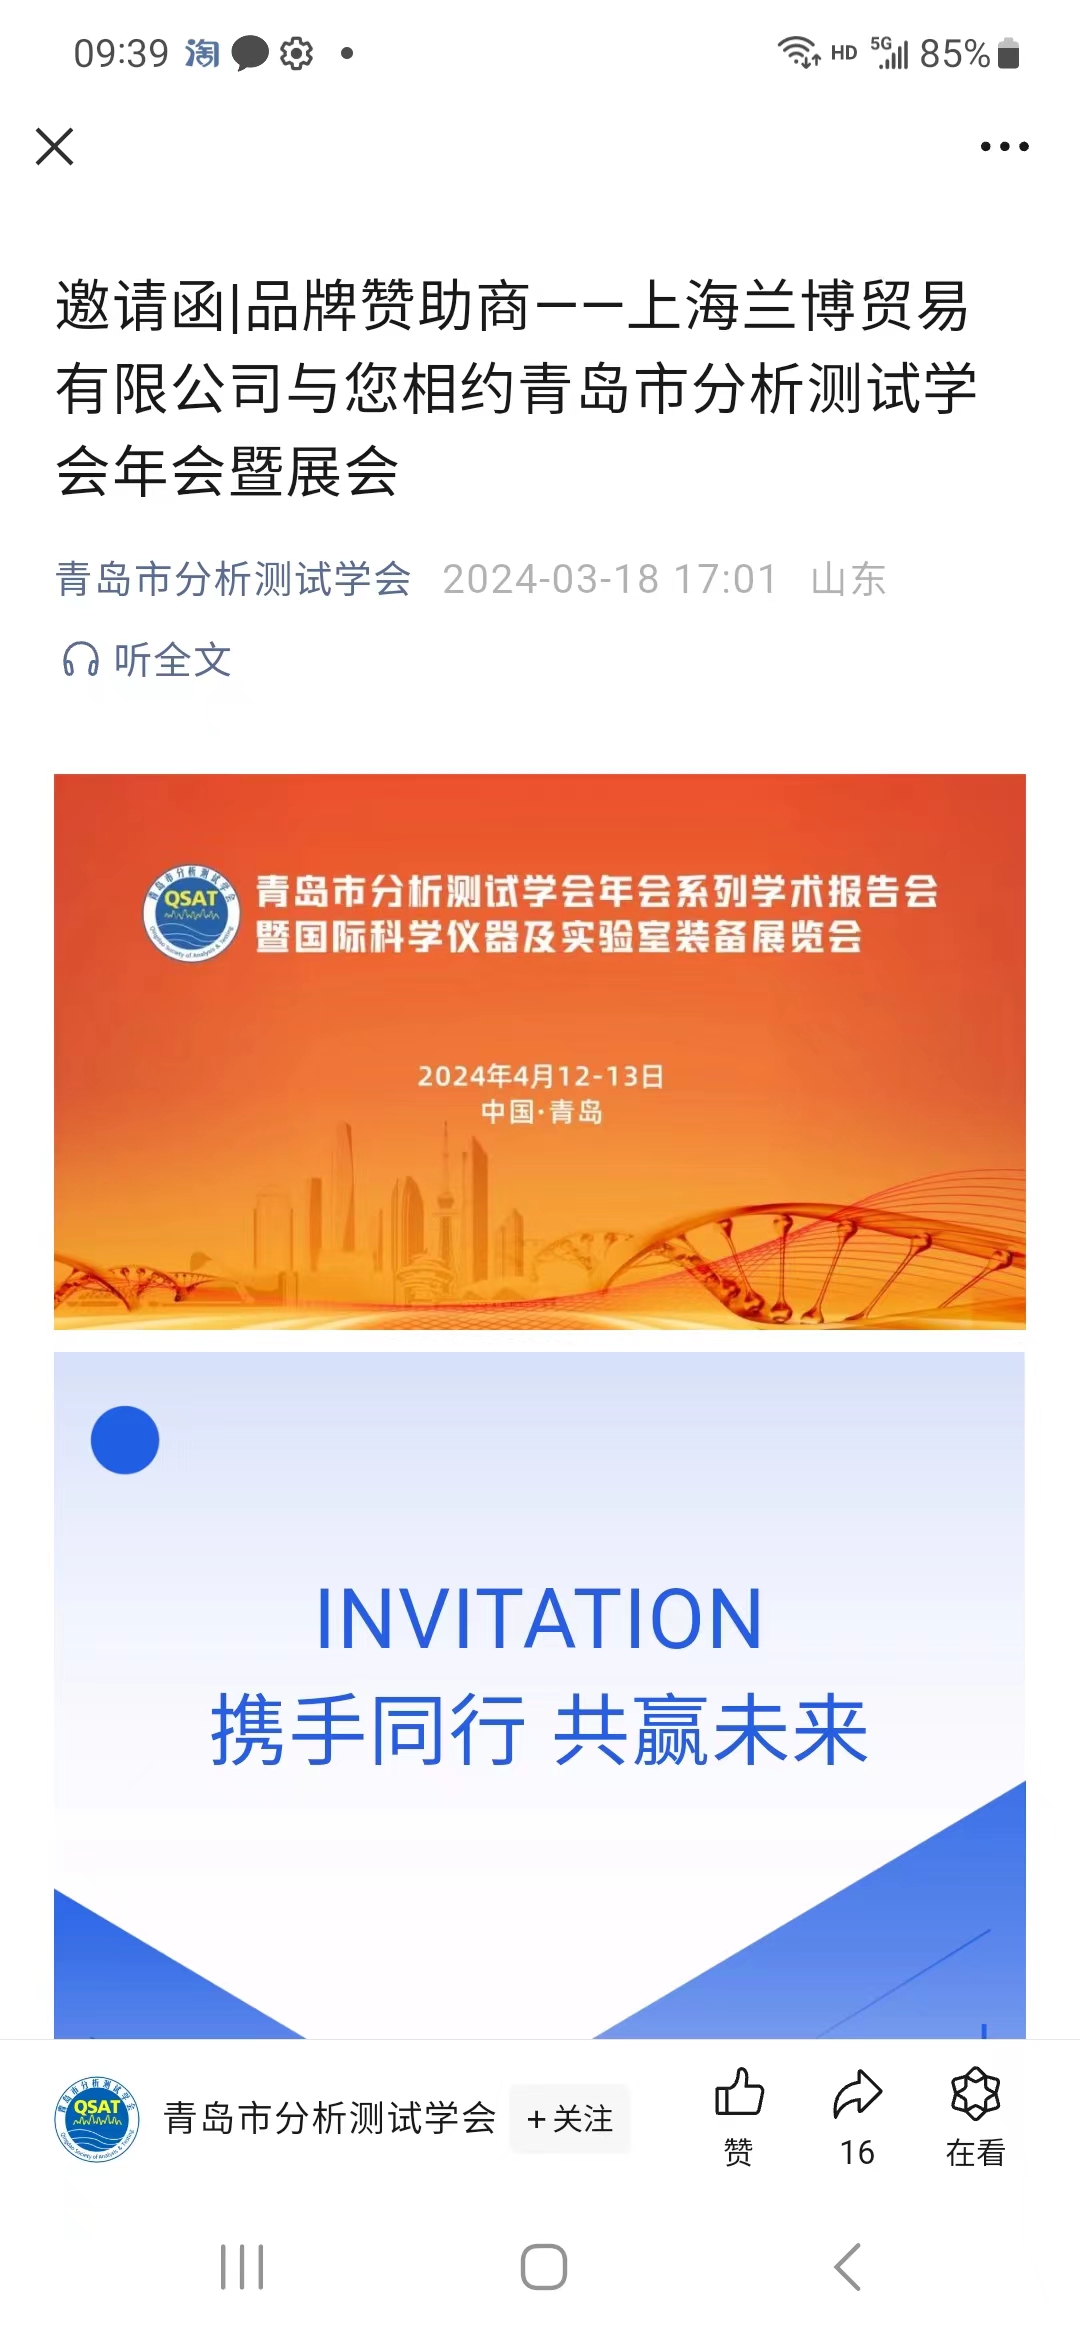 上海兰博受邀参加青岛市分析测试学会年会